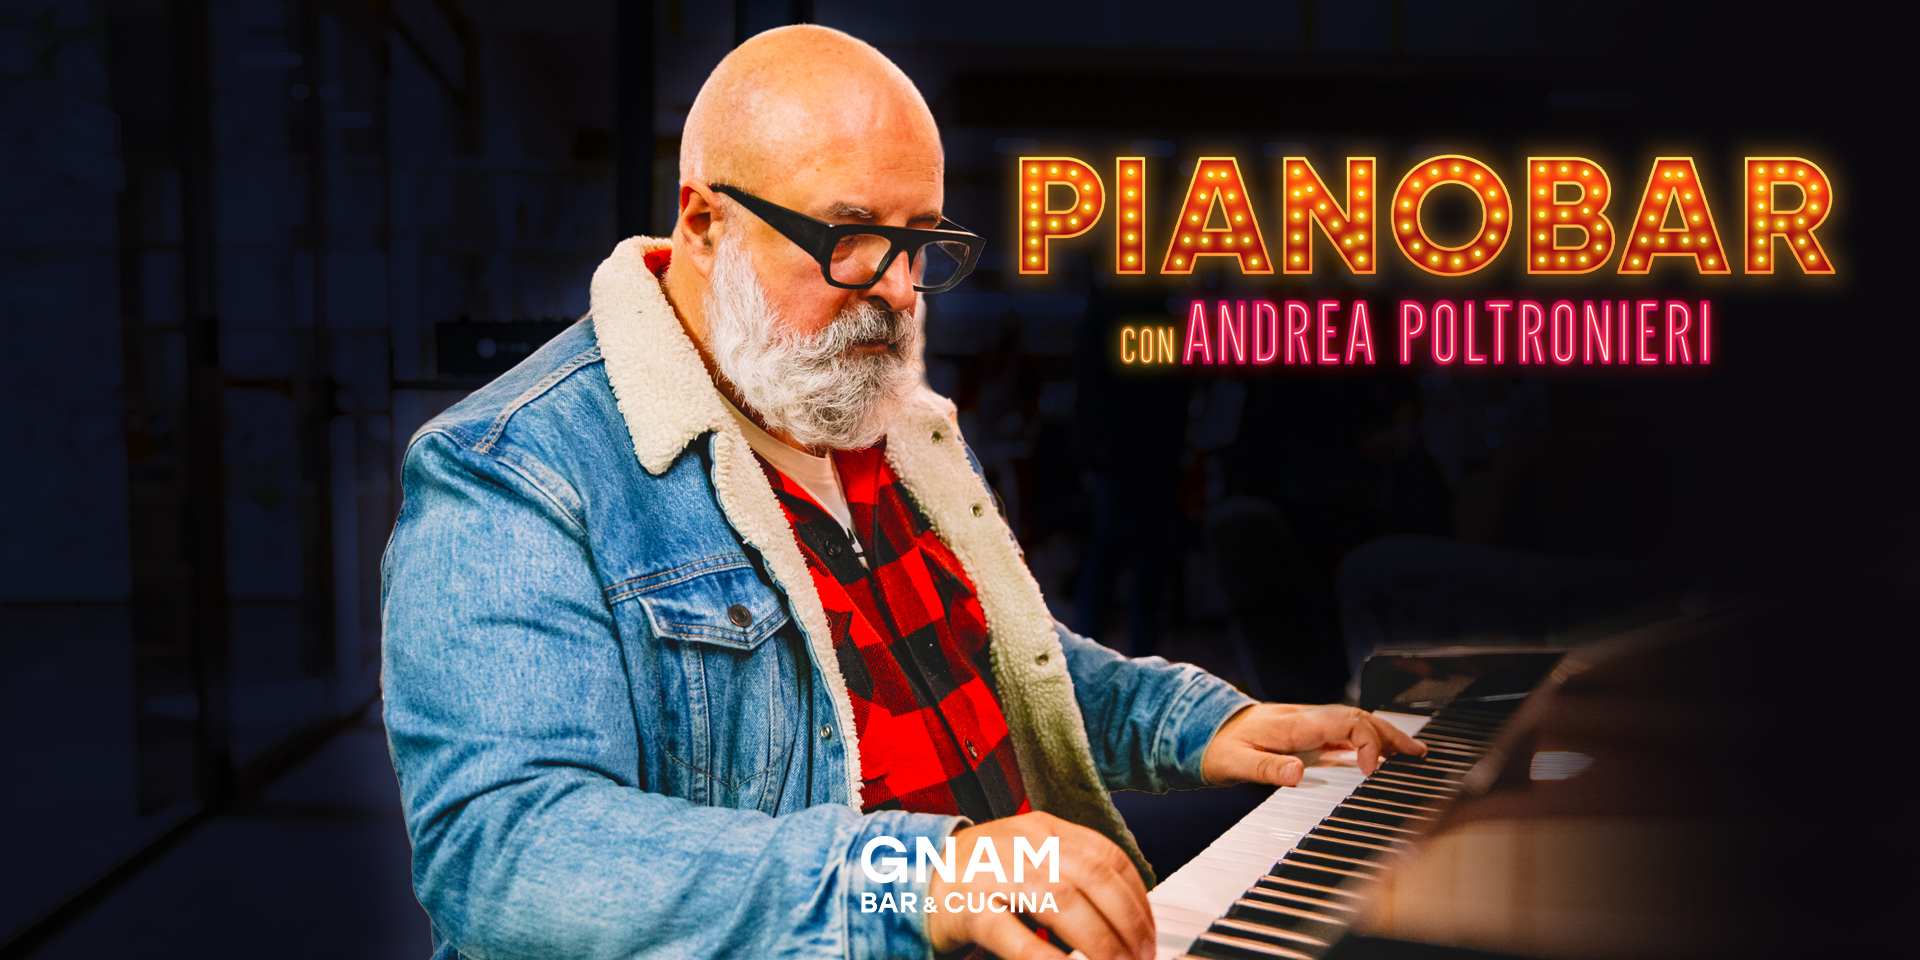 PianoBar con Andrea Poltronieri || Il nuovo Sabato sera di GNAM